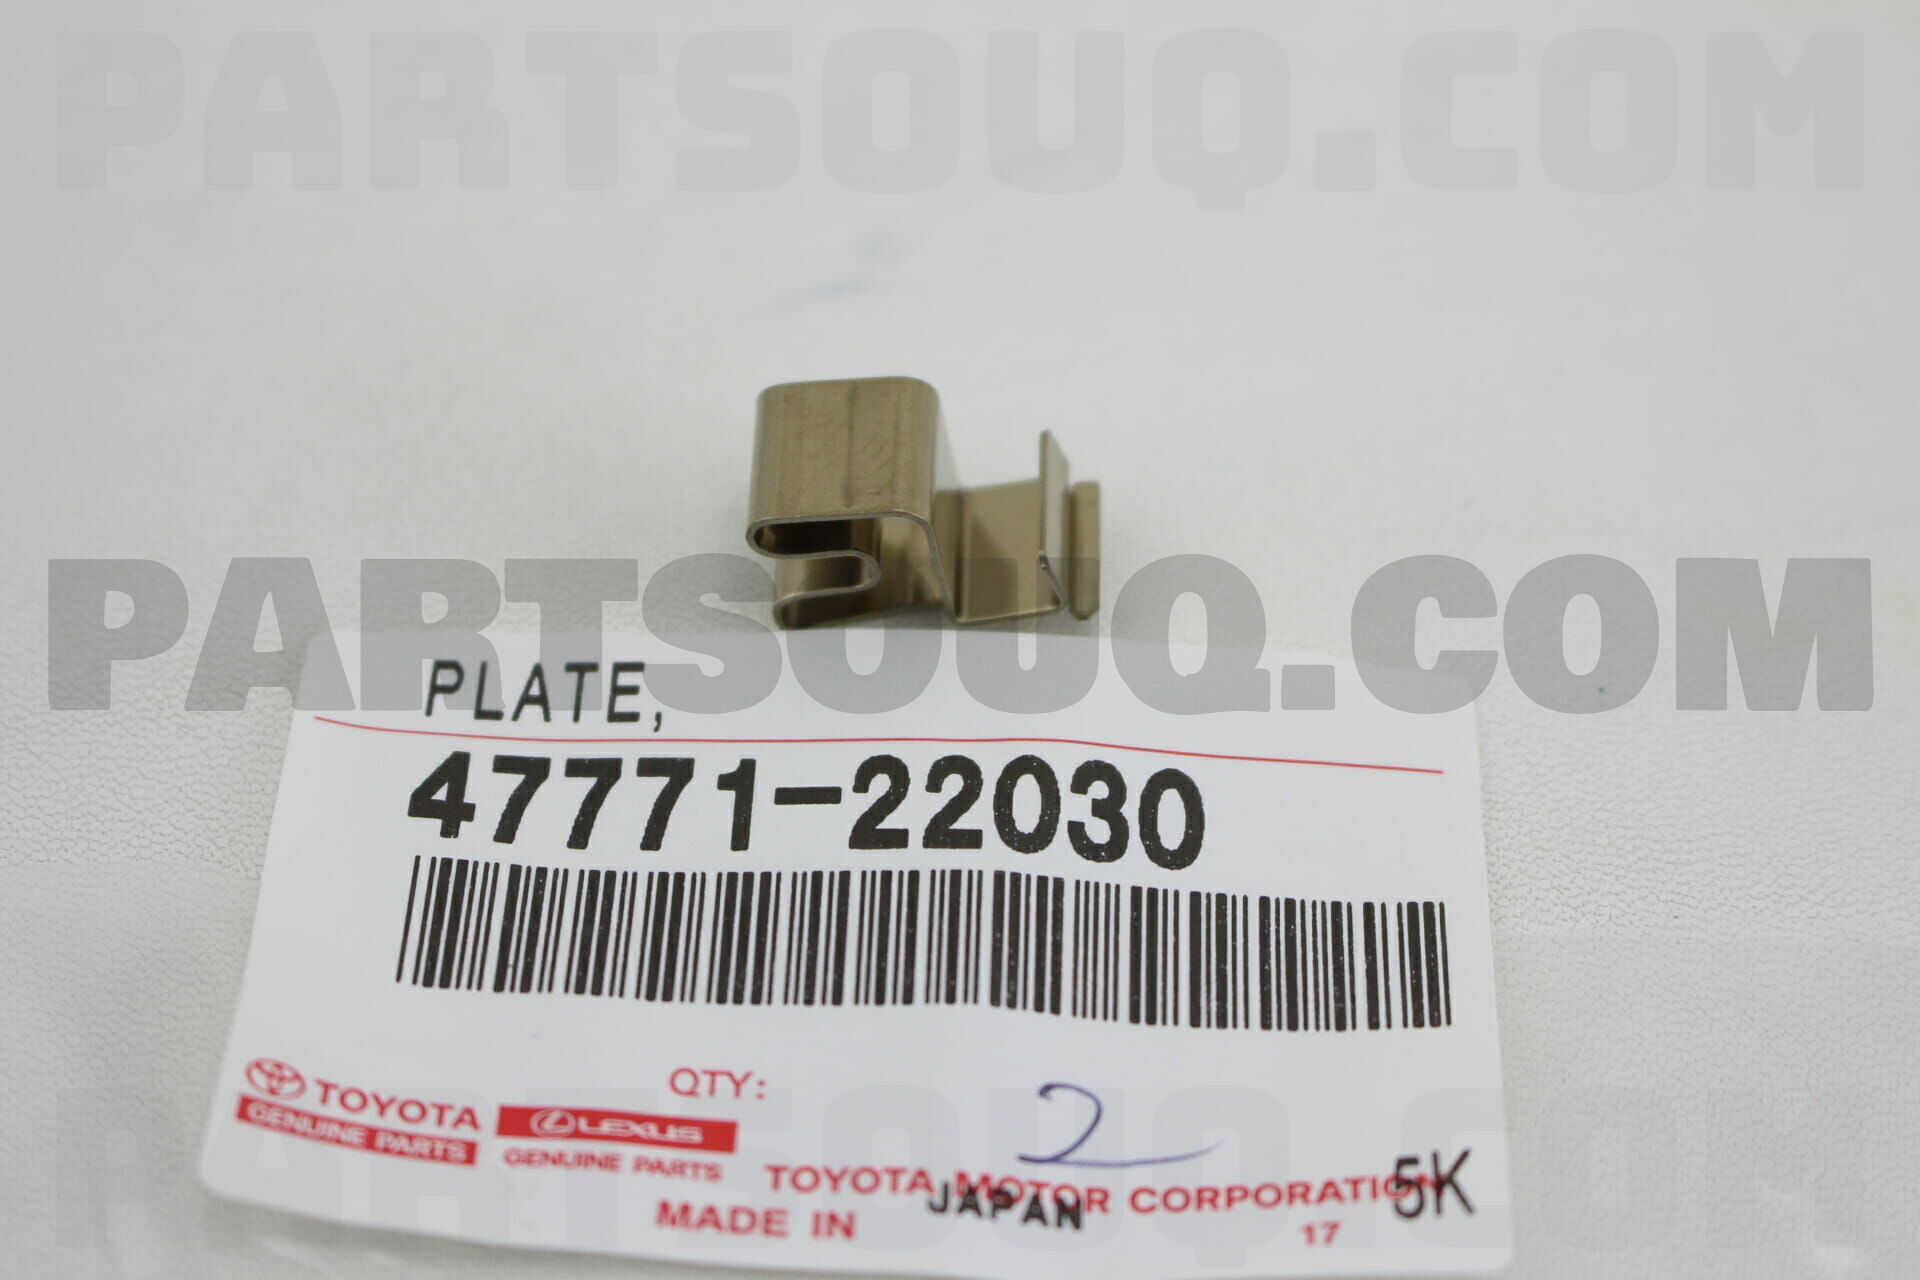 Clutch Pressu 35639-22030 Plate Genuine Toyota Parts 